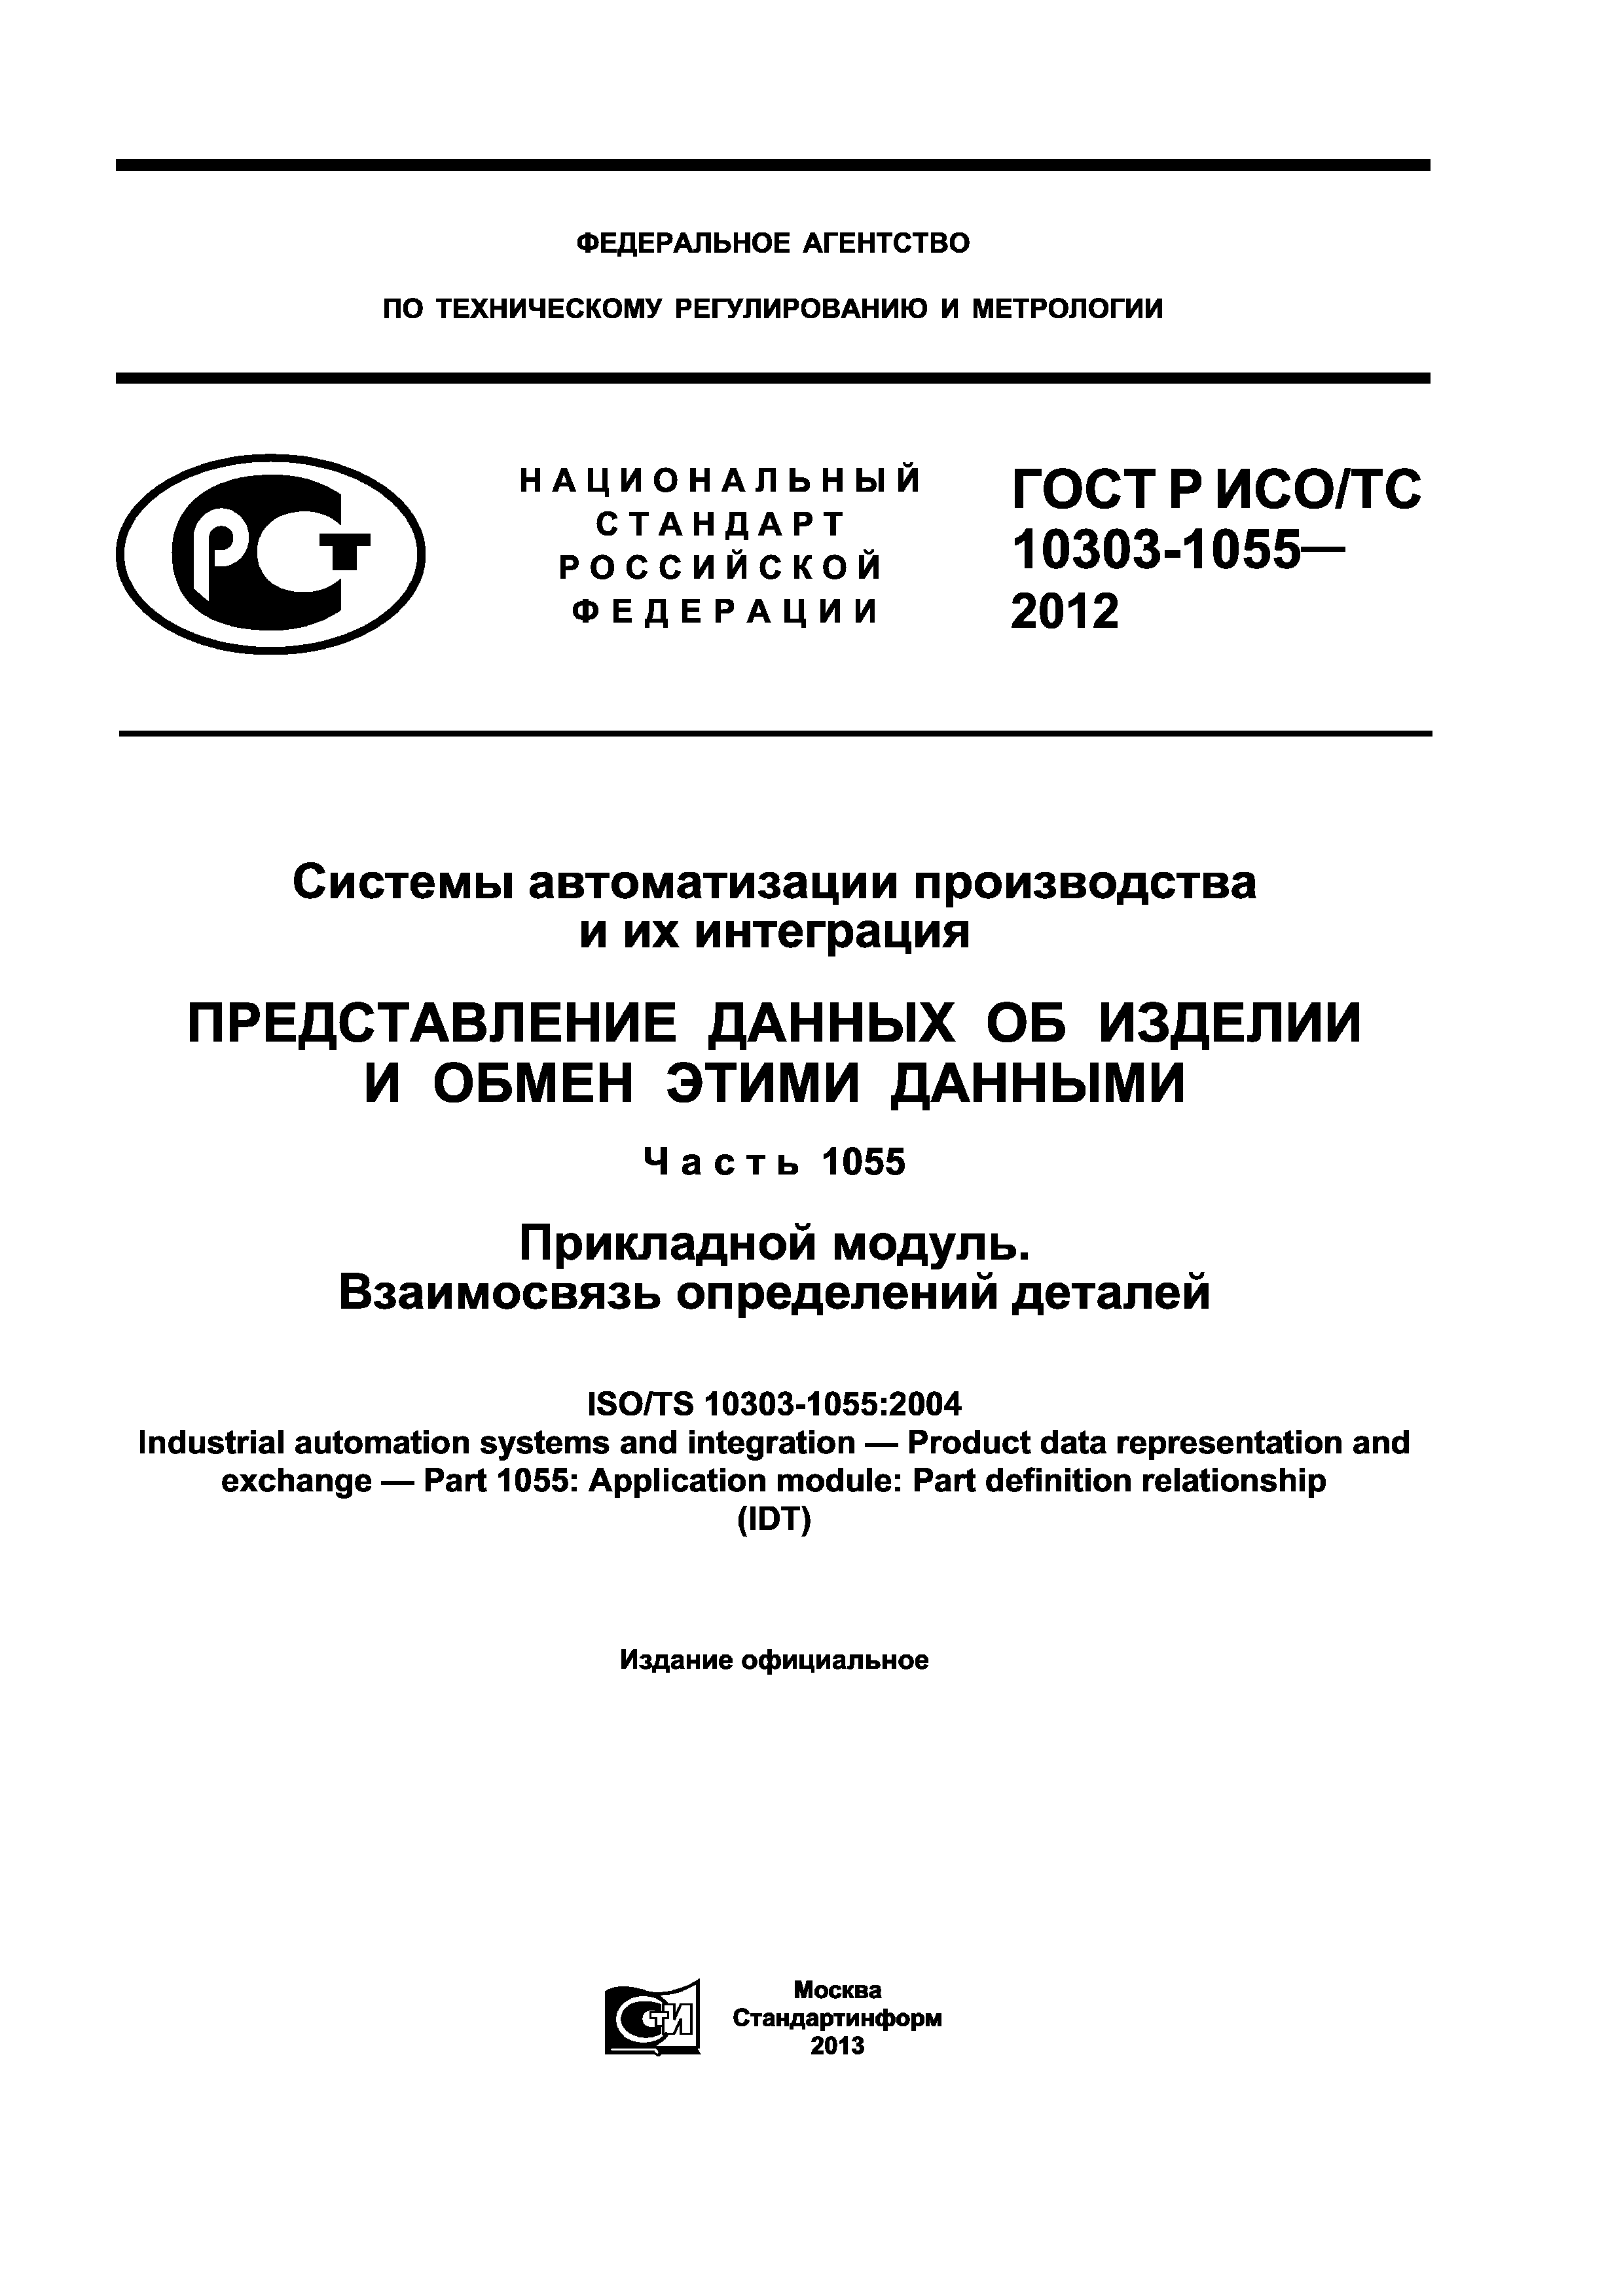 ГОСТ Р ИСО/ТС 10303-1055-2012